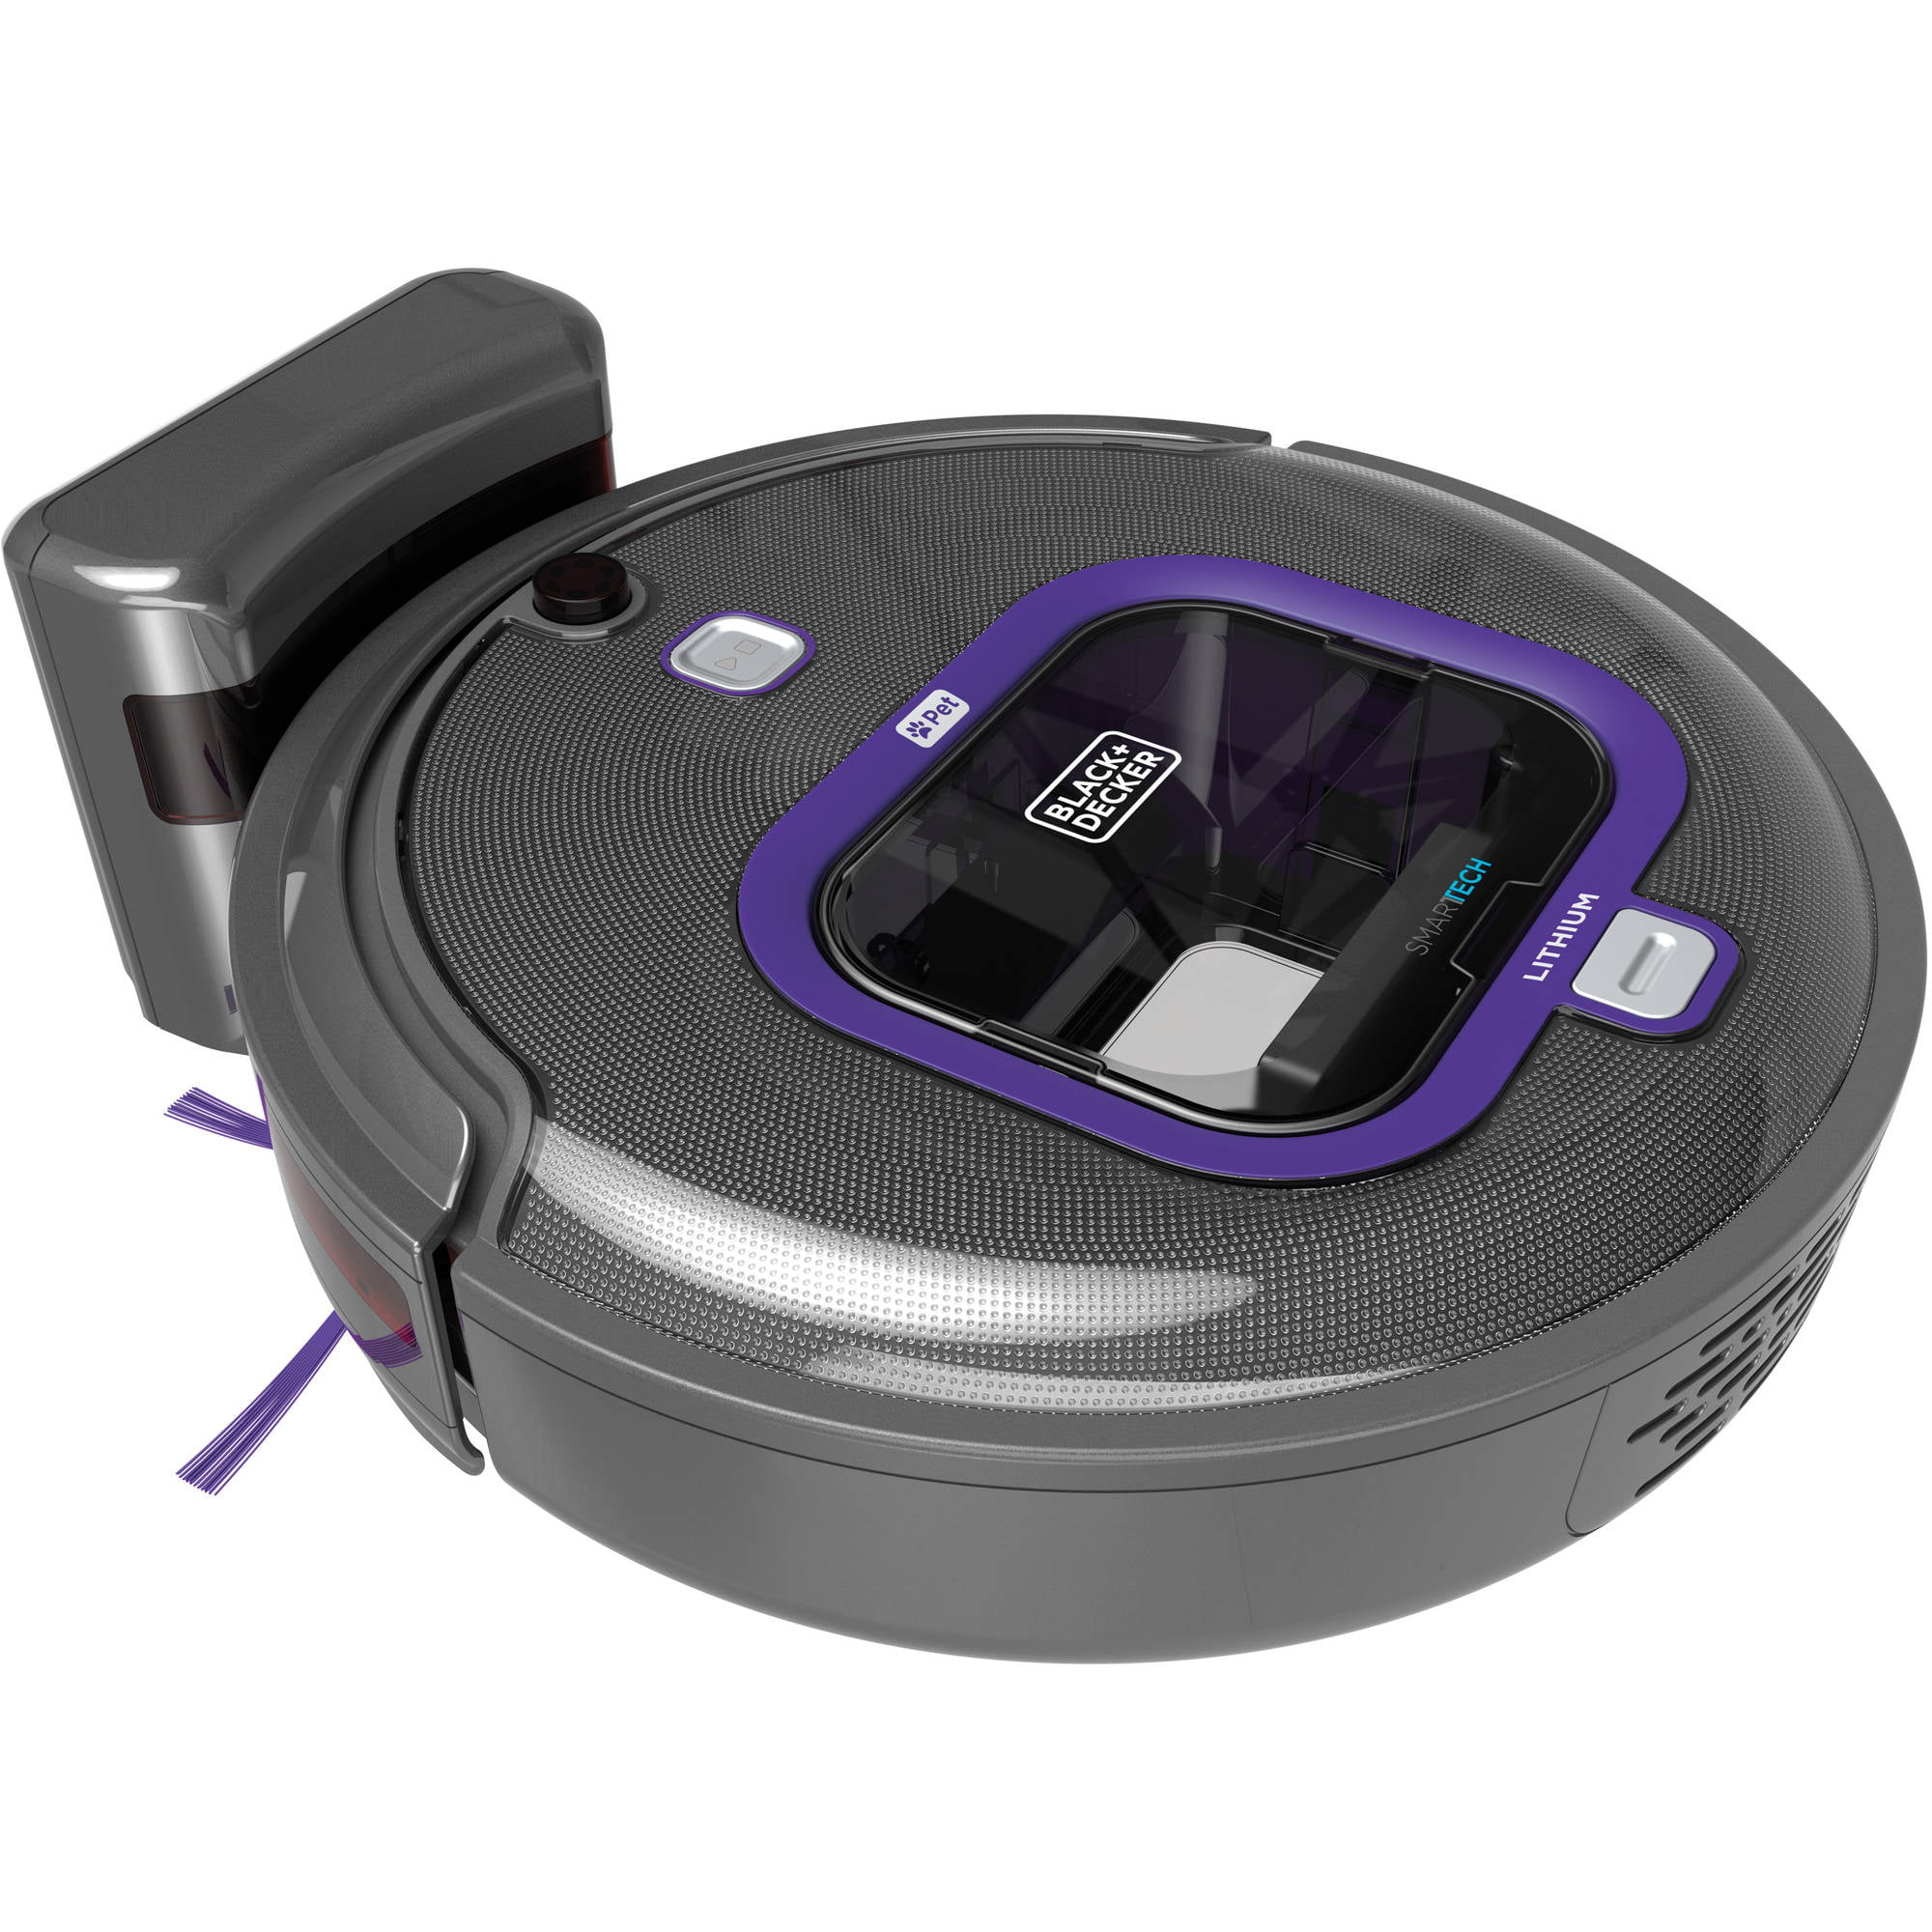 Black & Decker's Smartech Robotic Vacuum keeps smarts, cuts price at CES -  CNET